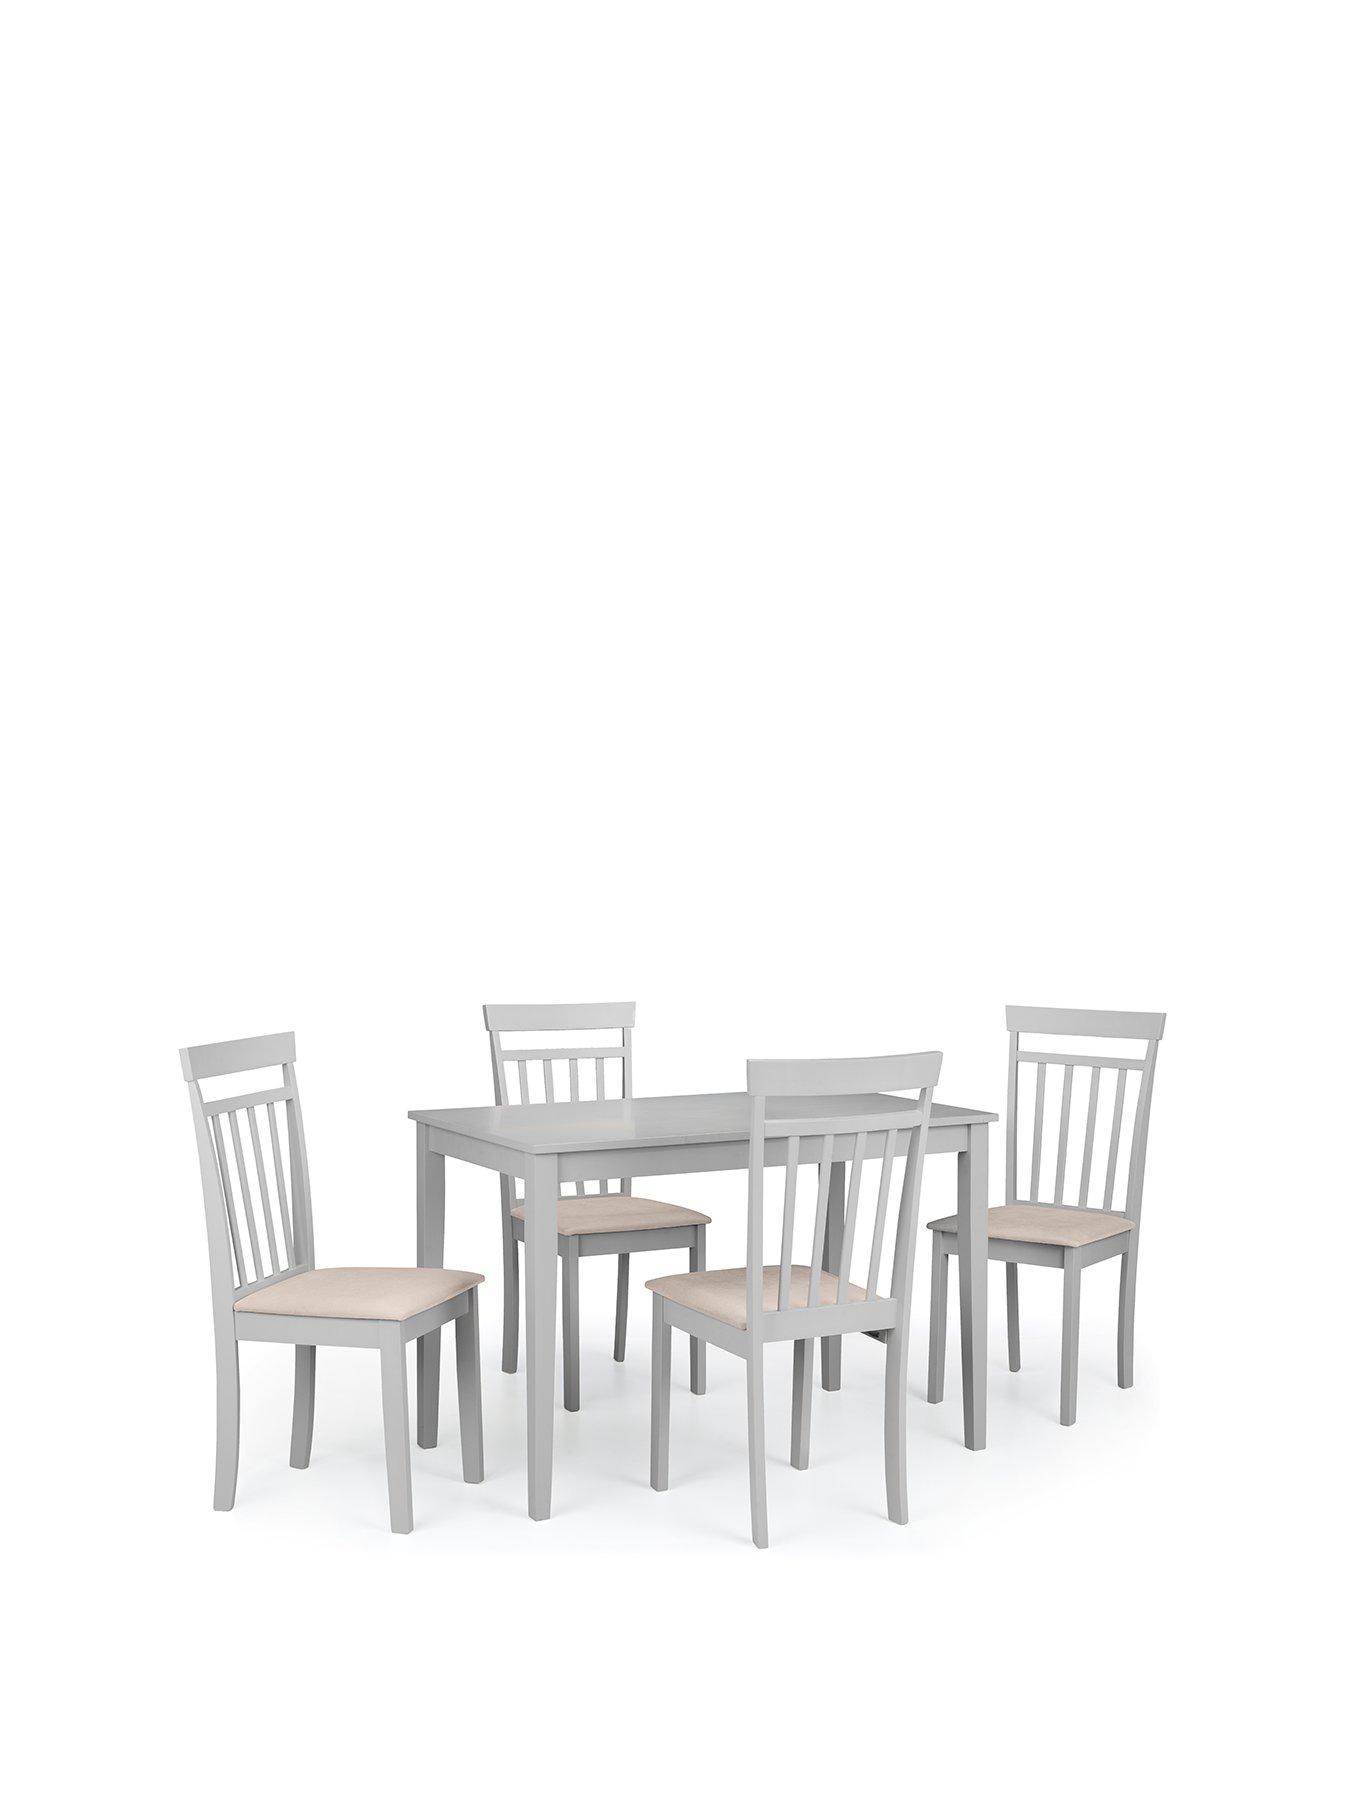 Julian Bowen Taku 114 Cm Dining Table + 4 Coast Chairs